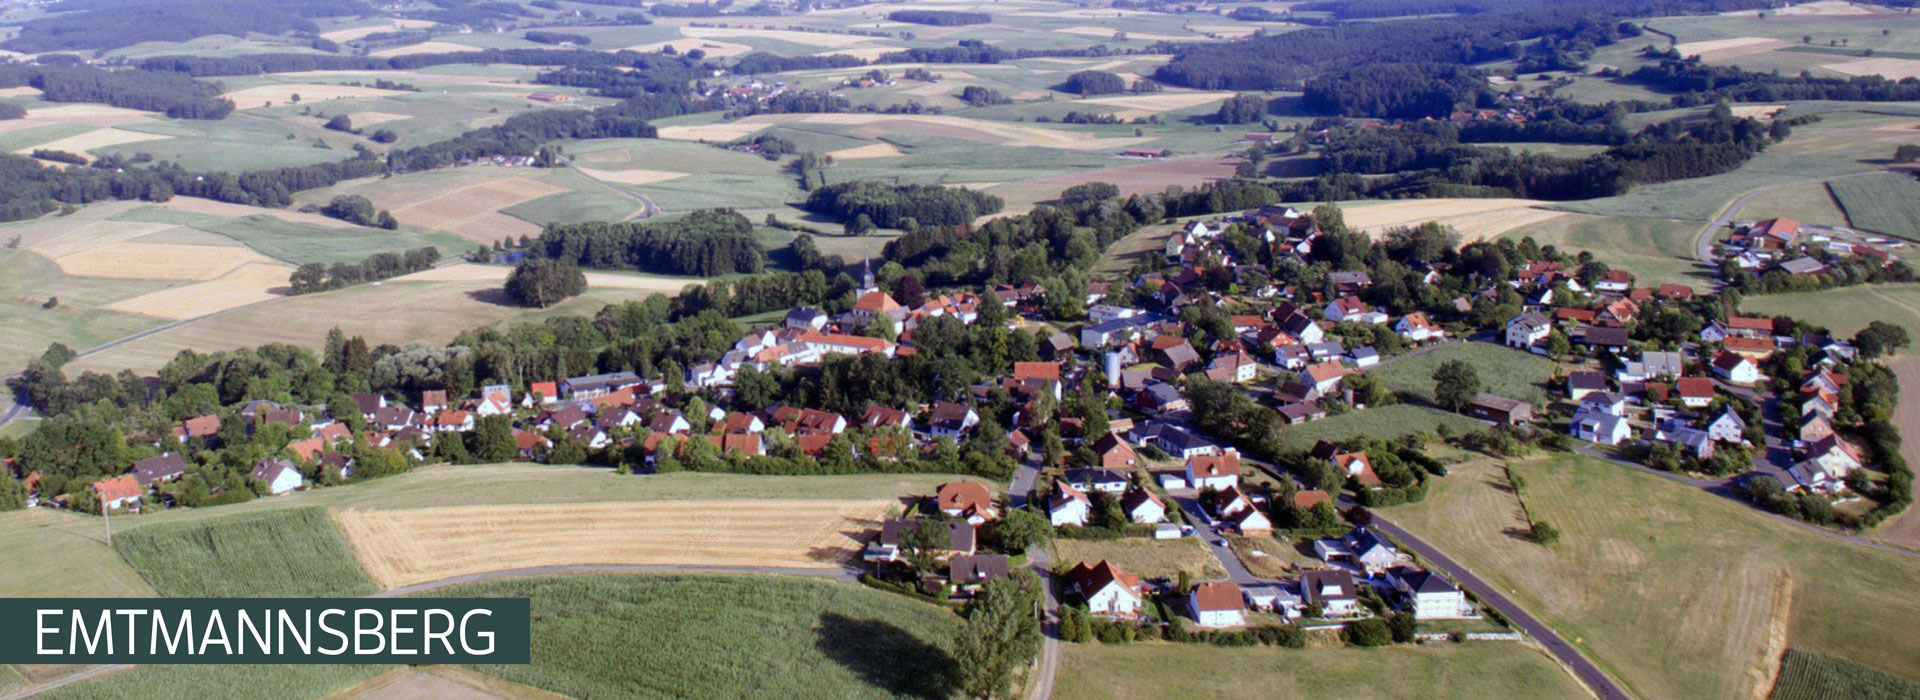 Sliderbild Emtmannsberg mit Ortsbezeichnung